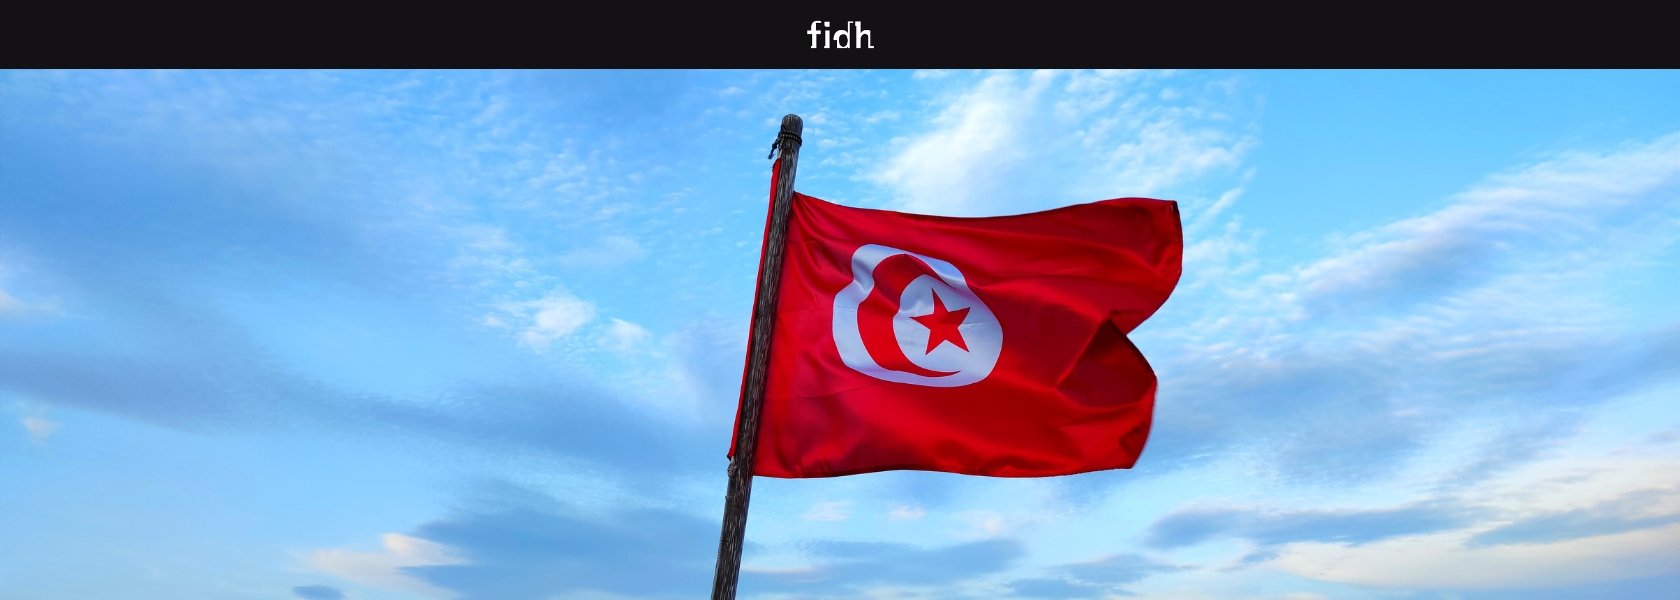 Tunisie - Fédération internationale pour les droits humains